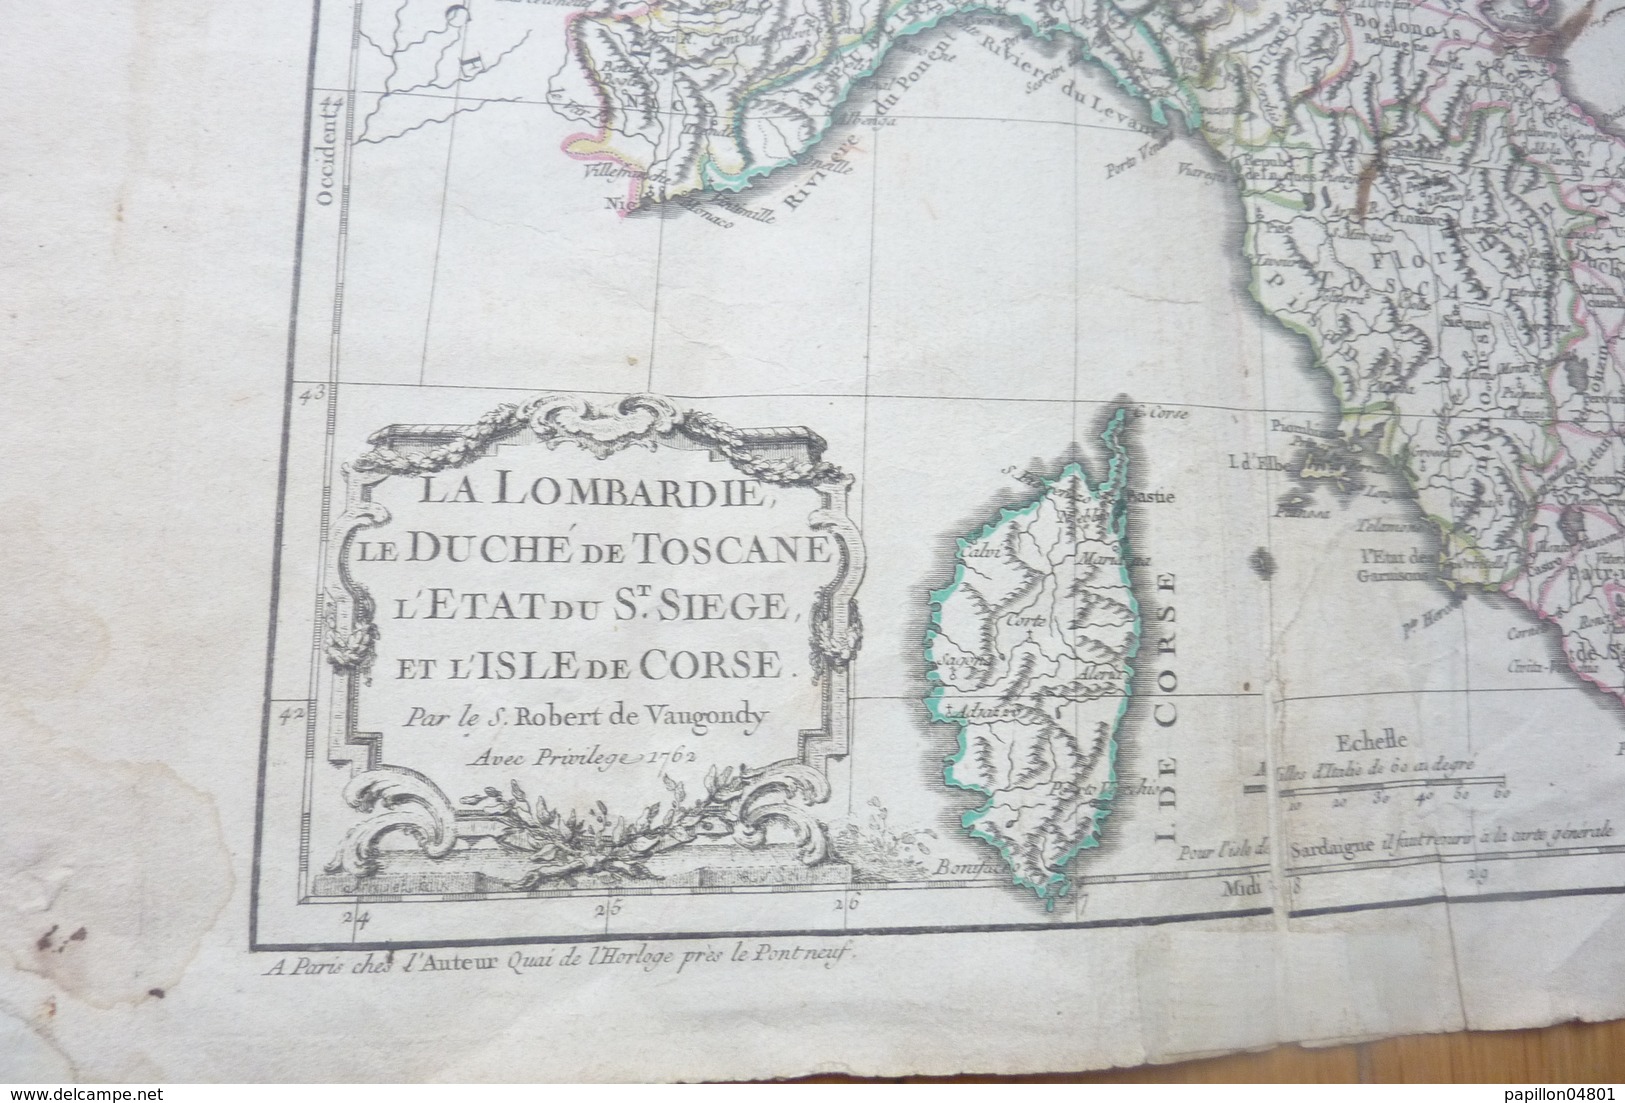 CARTE ANCIENNE 18EME 1762  S. ROBERT DE VAUGONDY LA CORSE LOMBARDIE TOSCANE  L'ETAT DU ST. SIEGE ITALIE  E.DUSSY - Cartes Géographiques